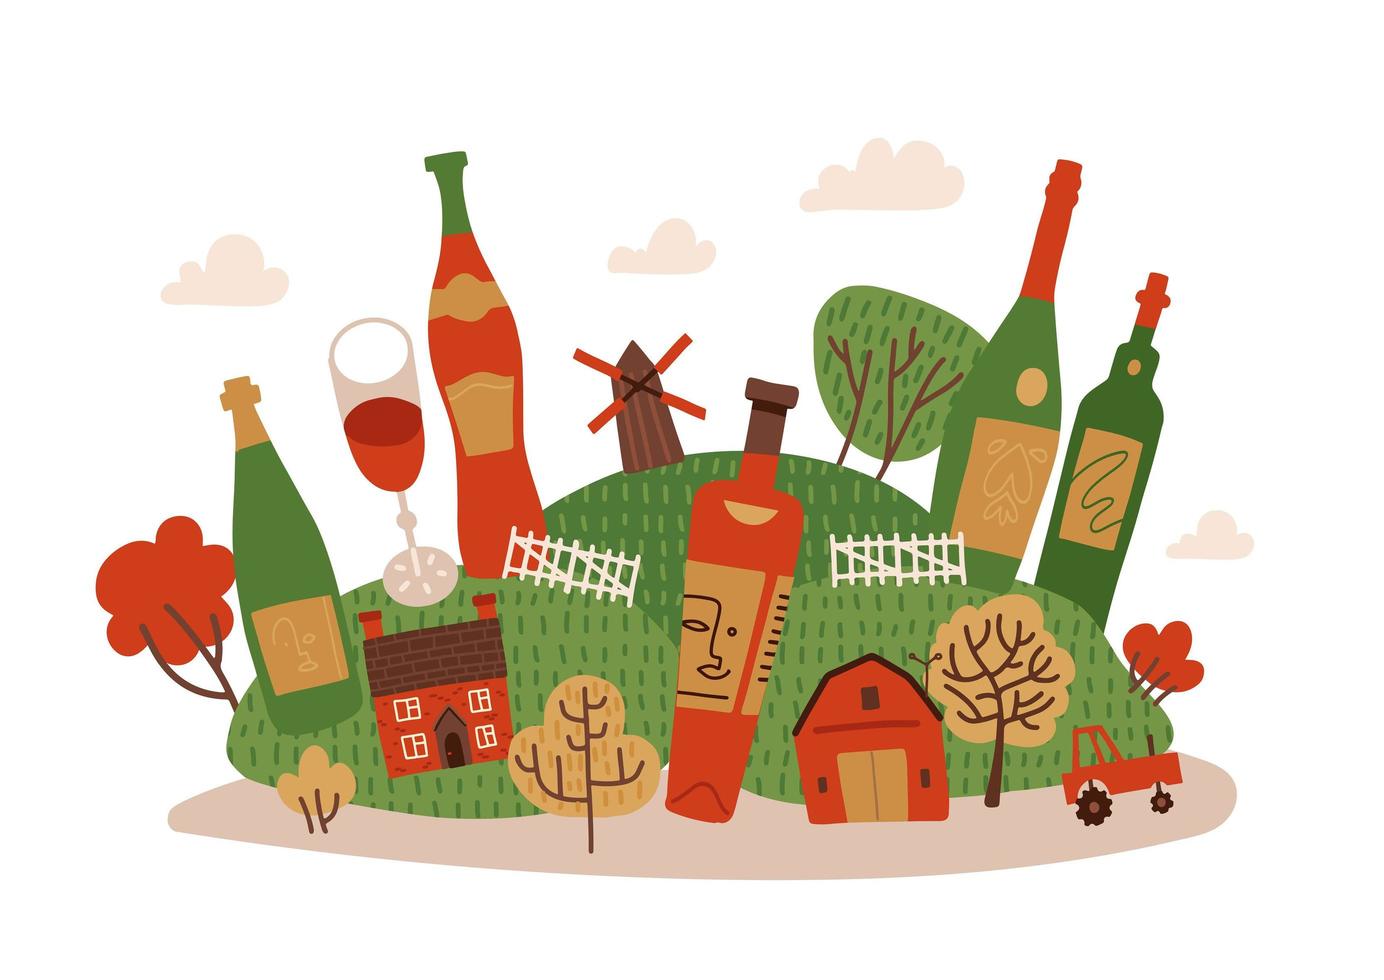 acogedor paisaje de pueblo otoñal con bebidas de vino. enormes botellas y copas de vino entre pequeñas casas y árboles... ilustración vectorial plana dibujada a mano. vector